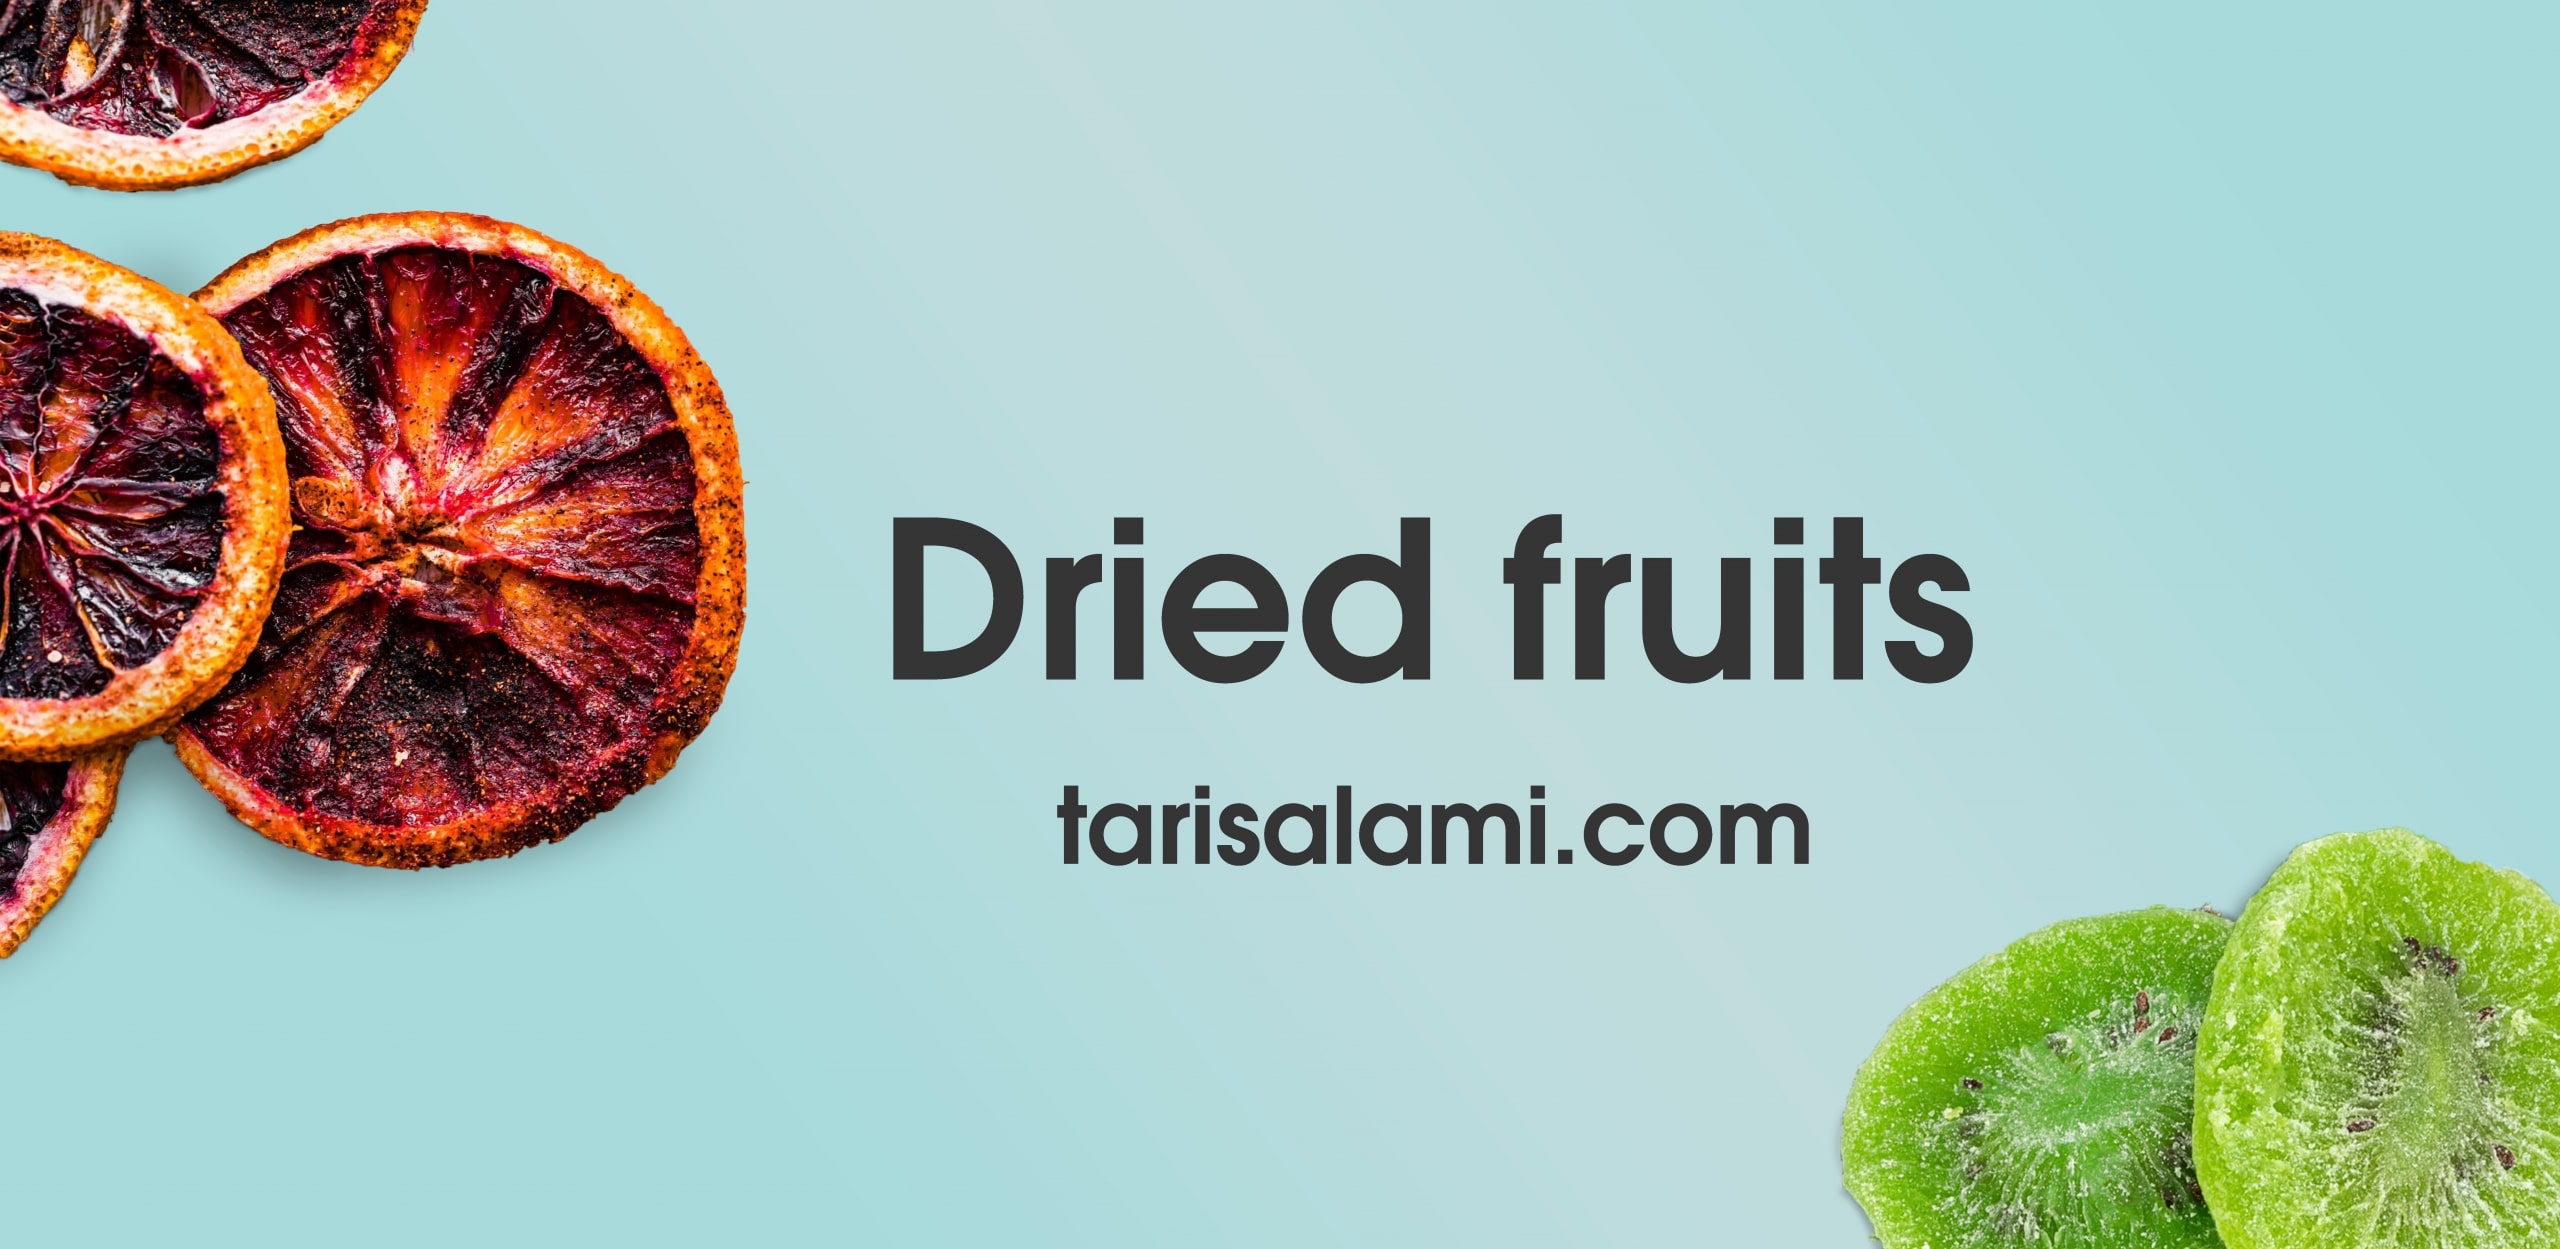 dried Fruits| Tari Export